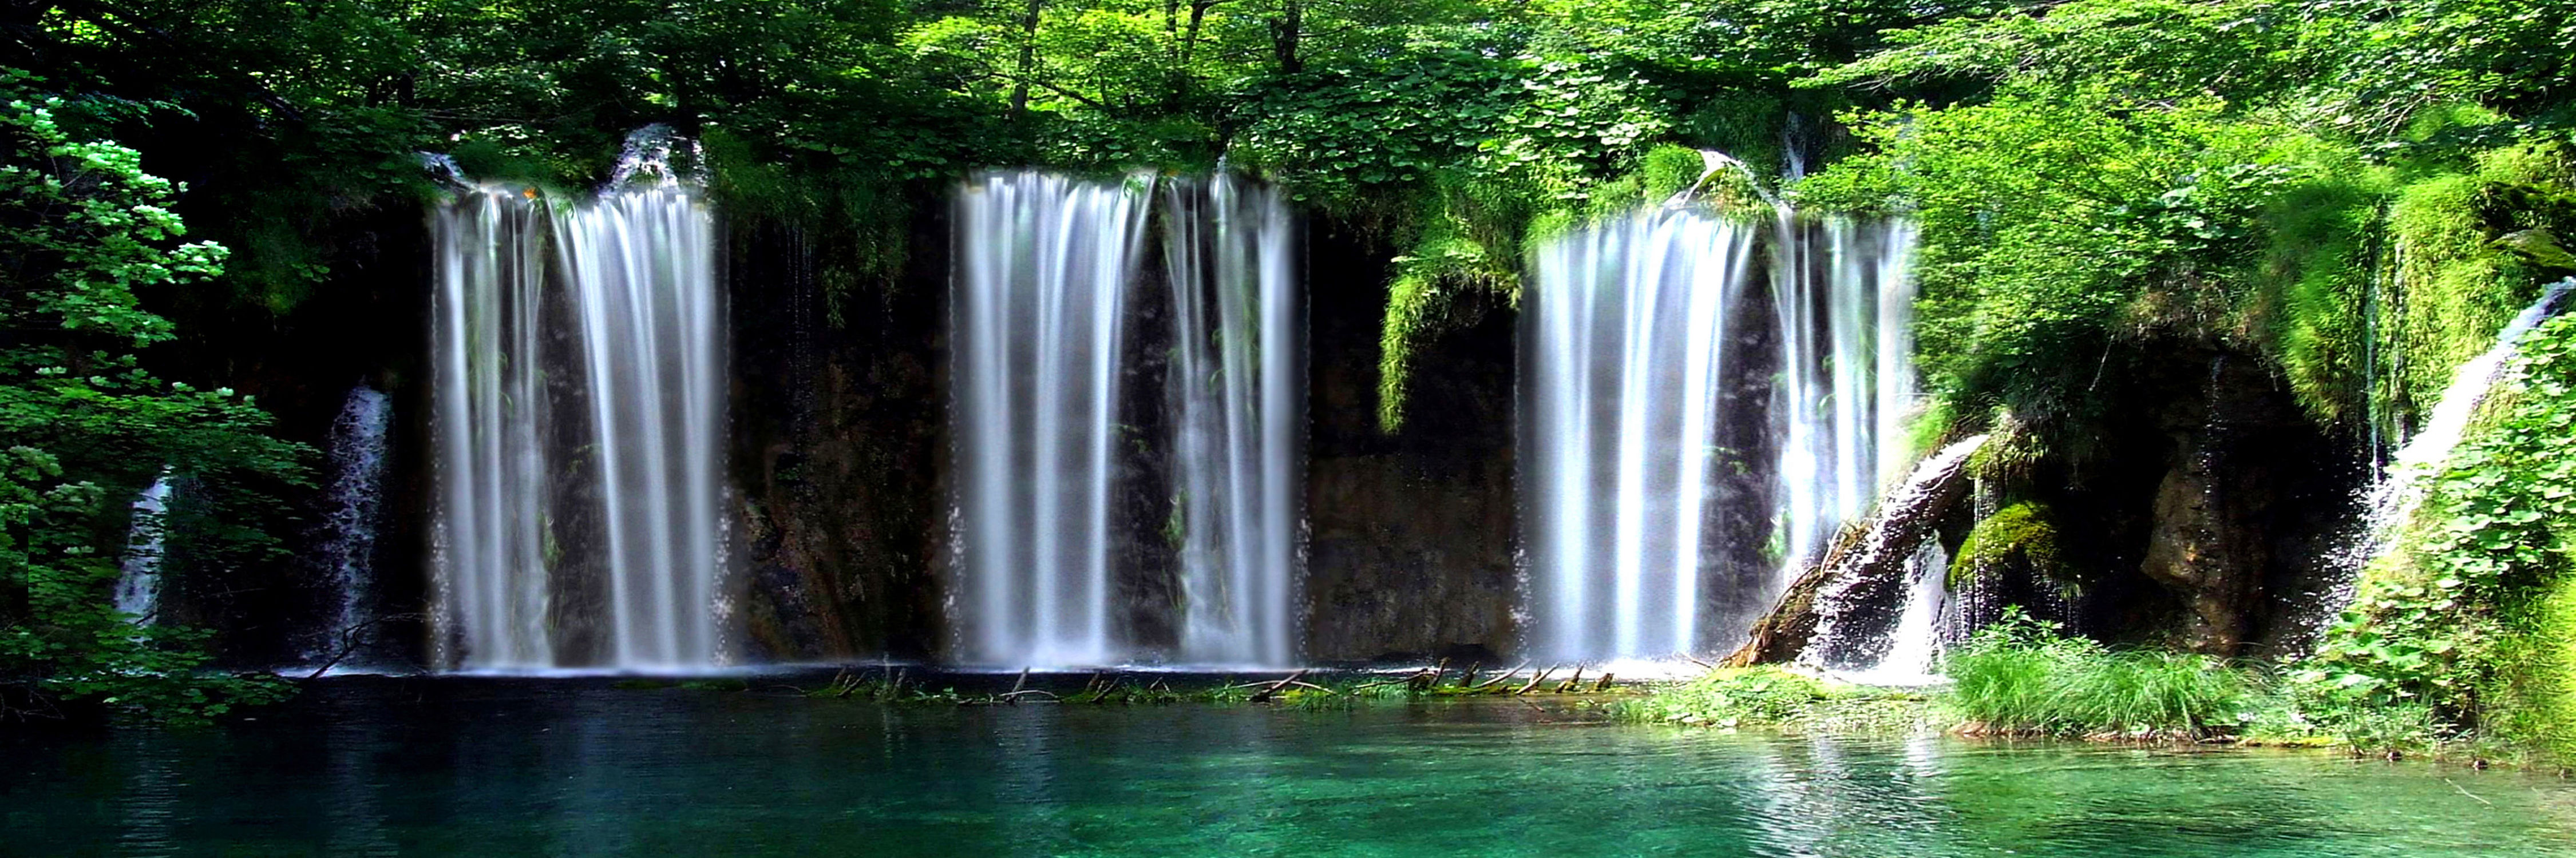 Bild mit Natur, Landschaften, Bäume, Gewässer, Wälder, Seen, Flüsse, Wasserfälle, Wald, Baum, Landschaft, See, Wasserfall, Fluss